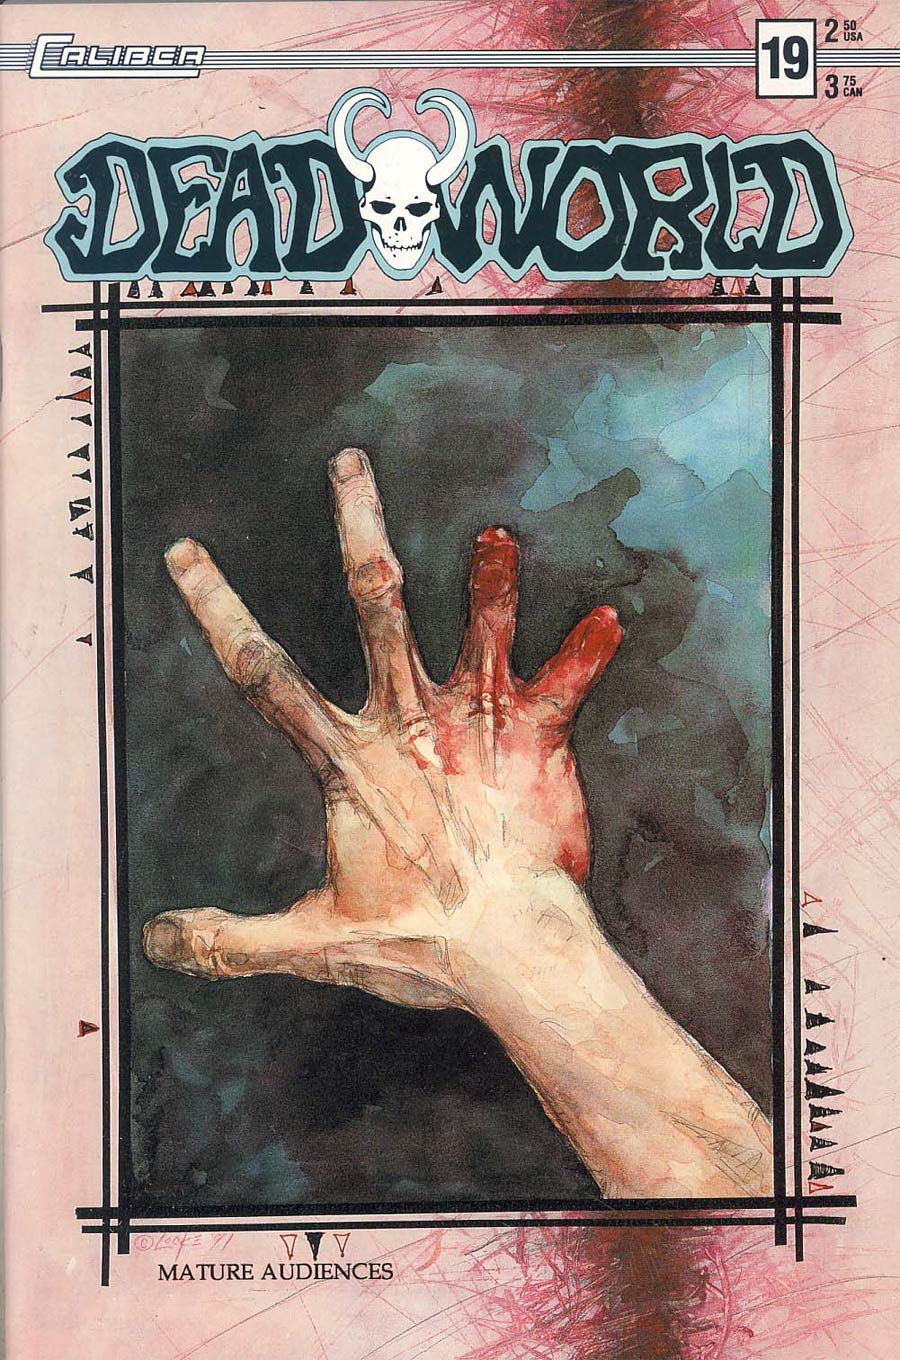 Deadworld #19 Graphic Cover